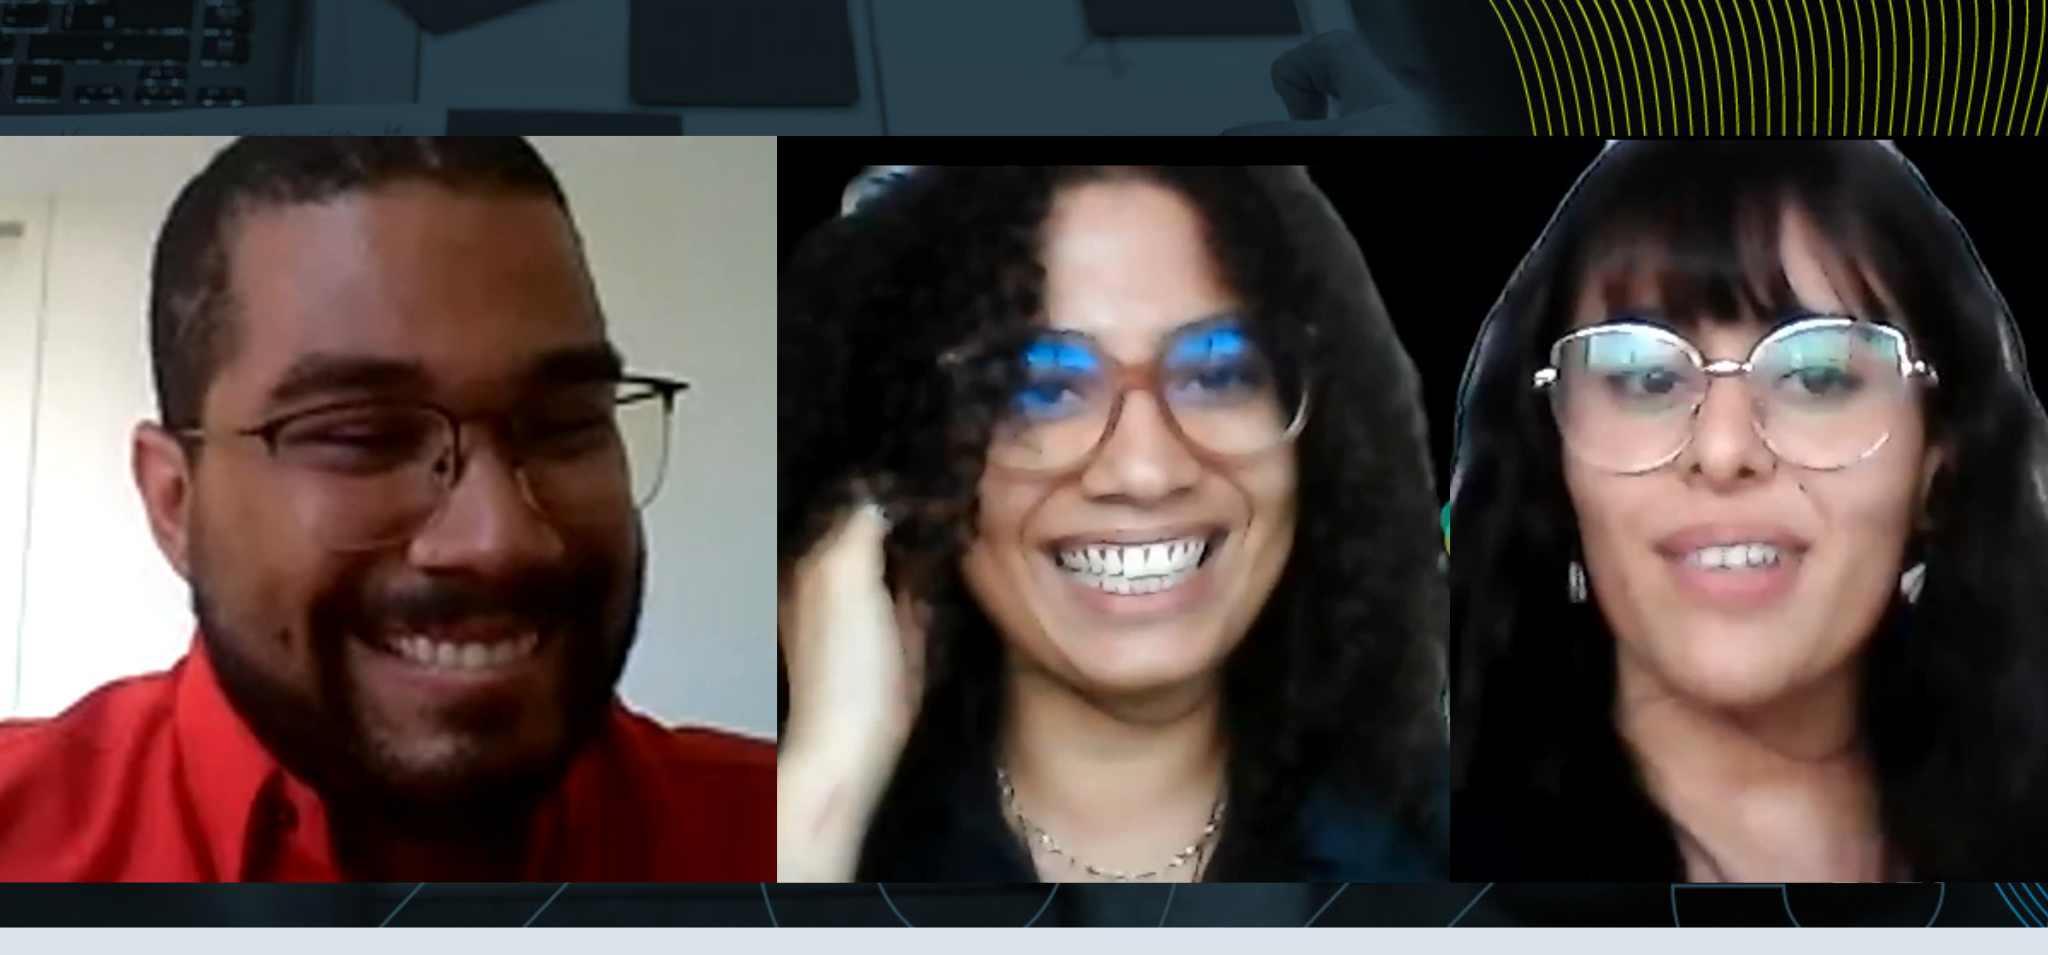 Da esquerda para direita prints de fotos do zoom, homem negro com óculos sorrindo, mulher negra com óculos sorrido, mulher branca de óculos sorrindo, fim da descrição.